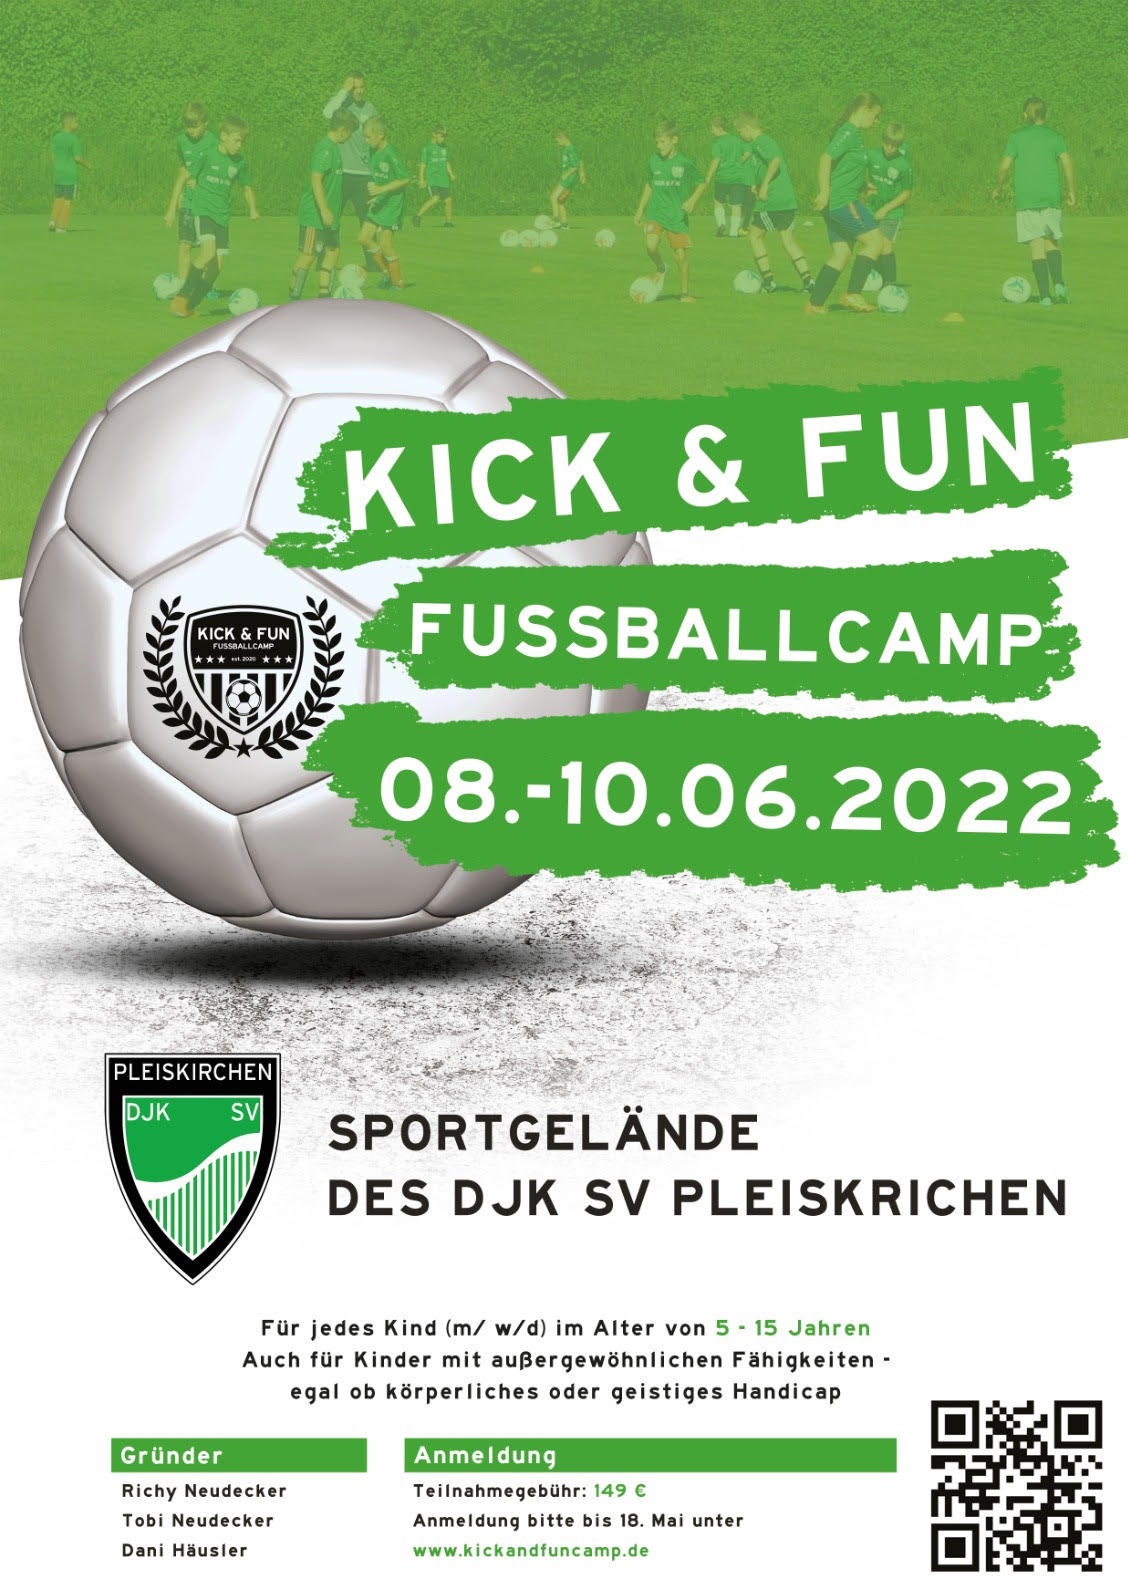 Kick & Fun Fußballcamp 2022 - das ultimative Weihnachtsgeschenk